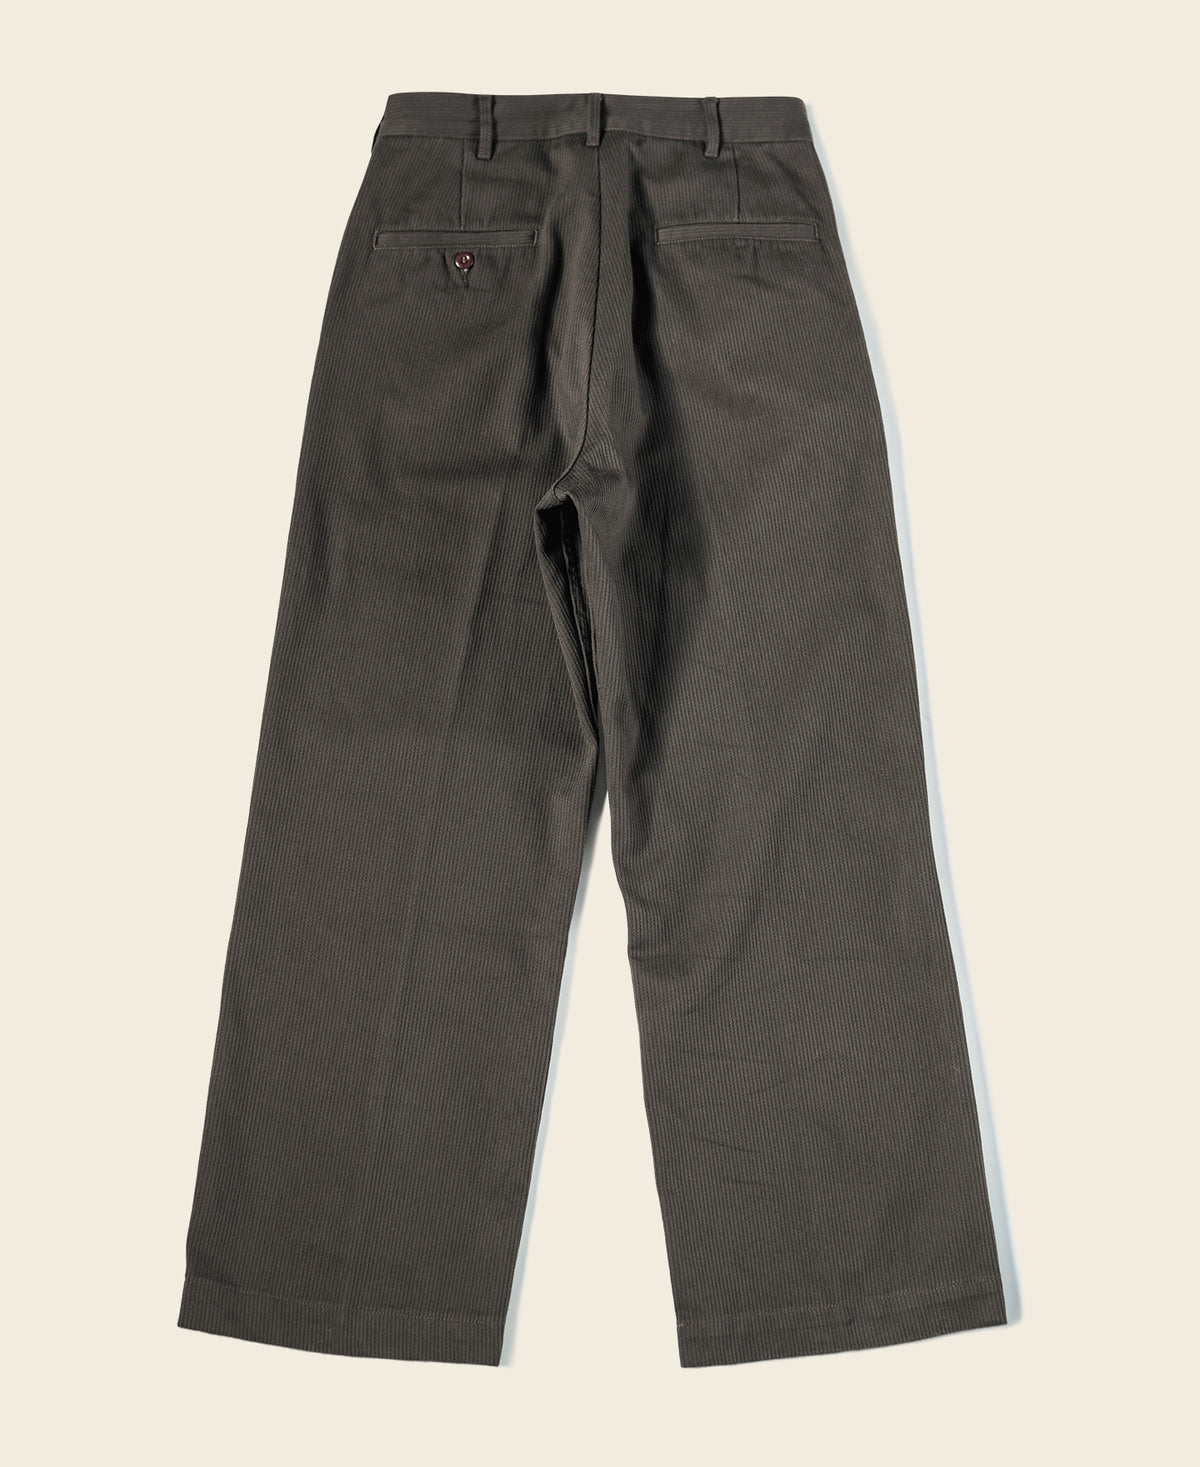 13 oz Cotton Bedford Cord Pants - Brown